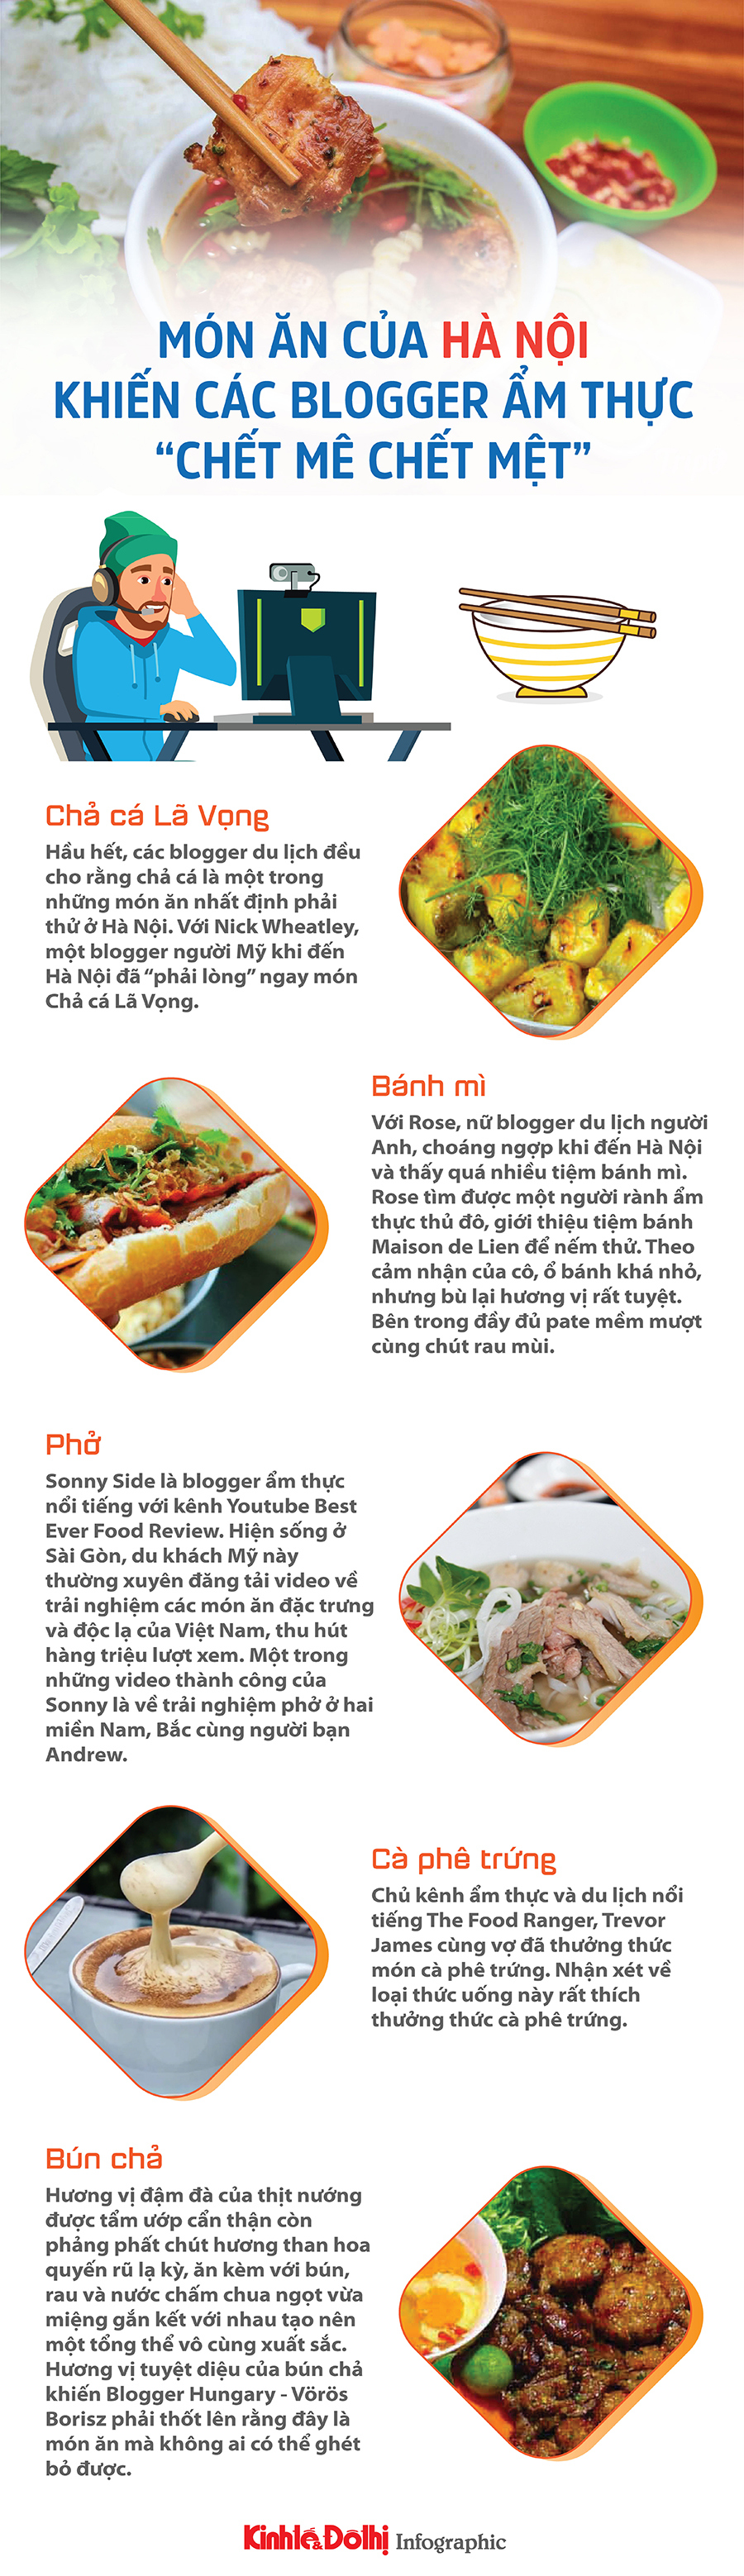 Top 5 món ăn của Hà Nội khiến các blogger ẩm thực “chết mê chết mệt” - Ảnh 1